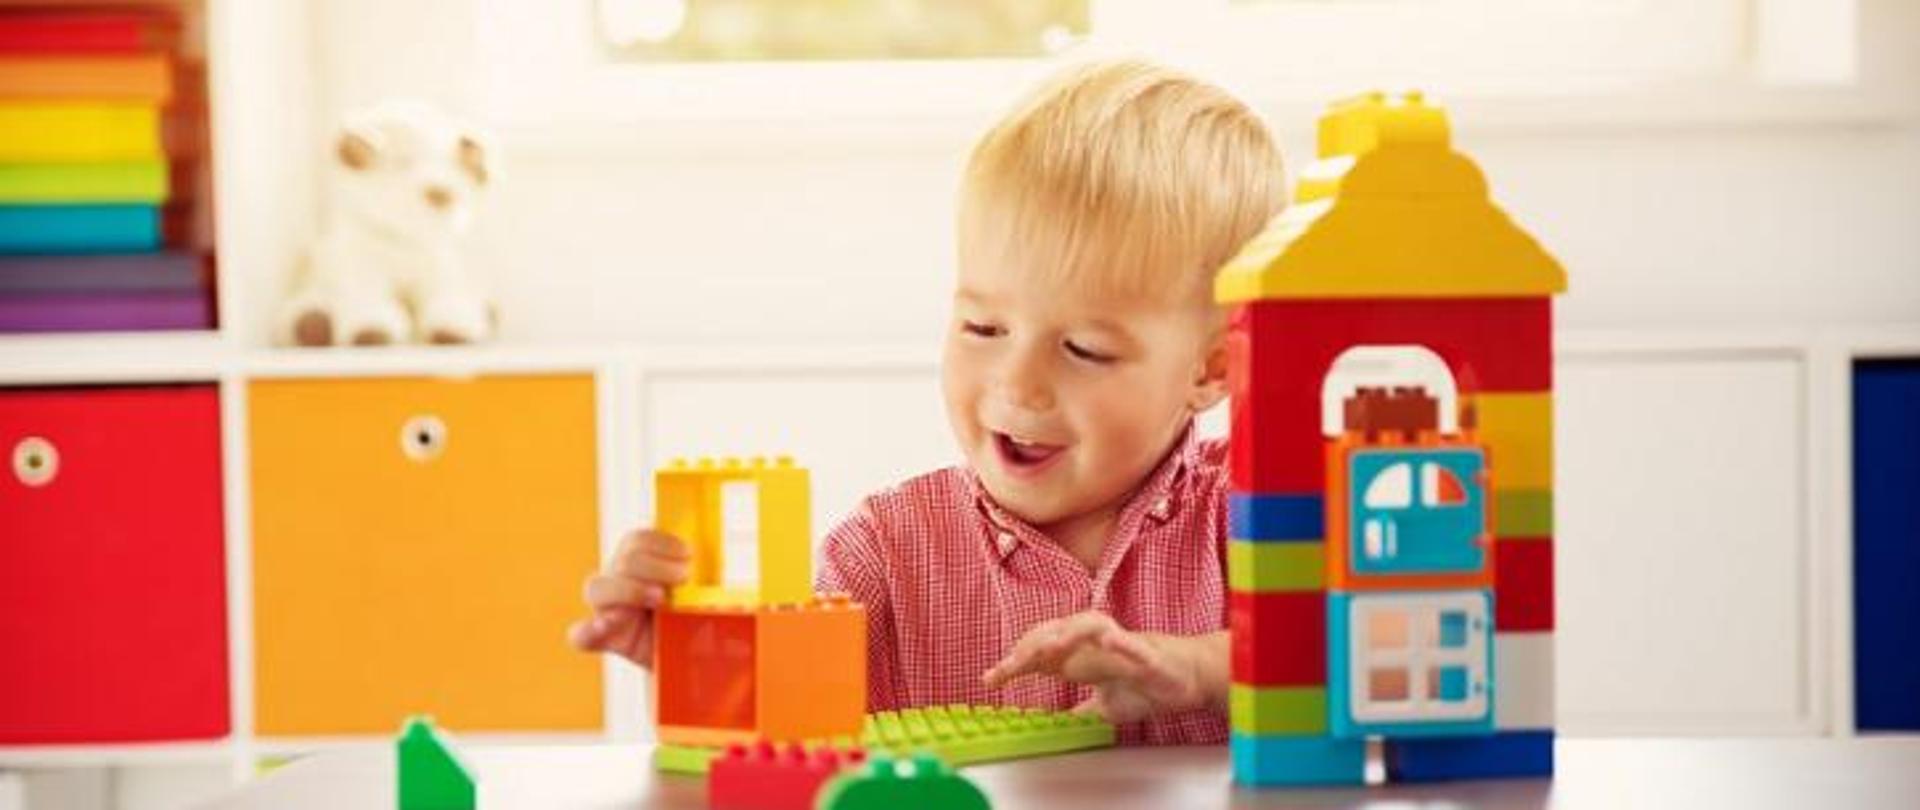 uśmiechnięty chłopiec około 4-5 lat bawiący się kolorowymi klockami.